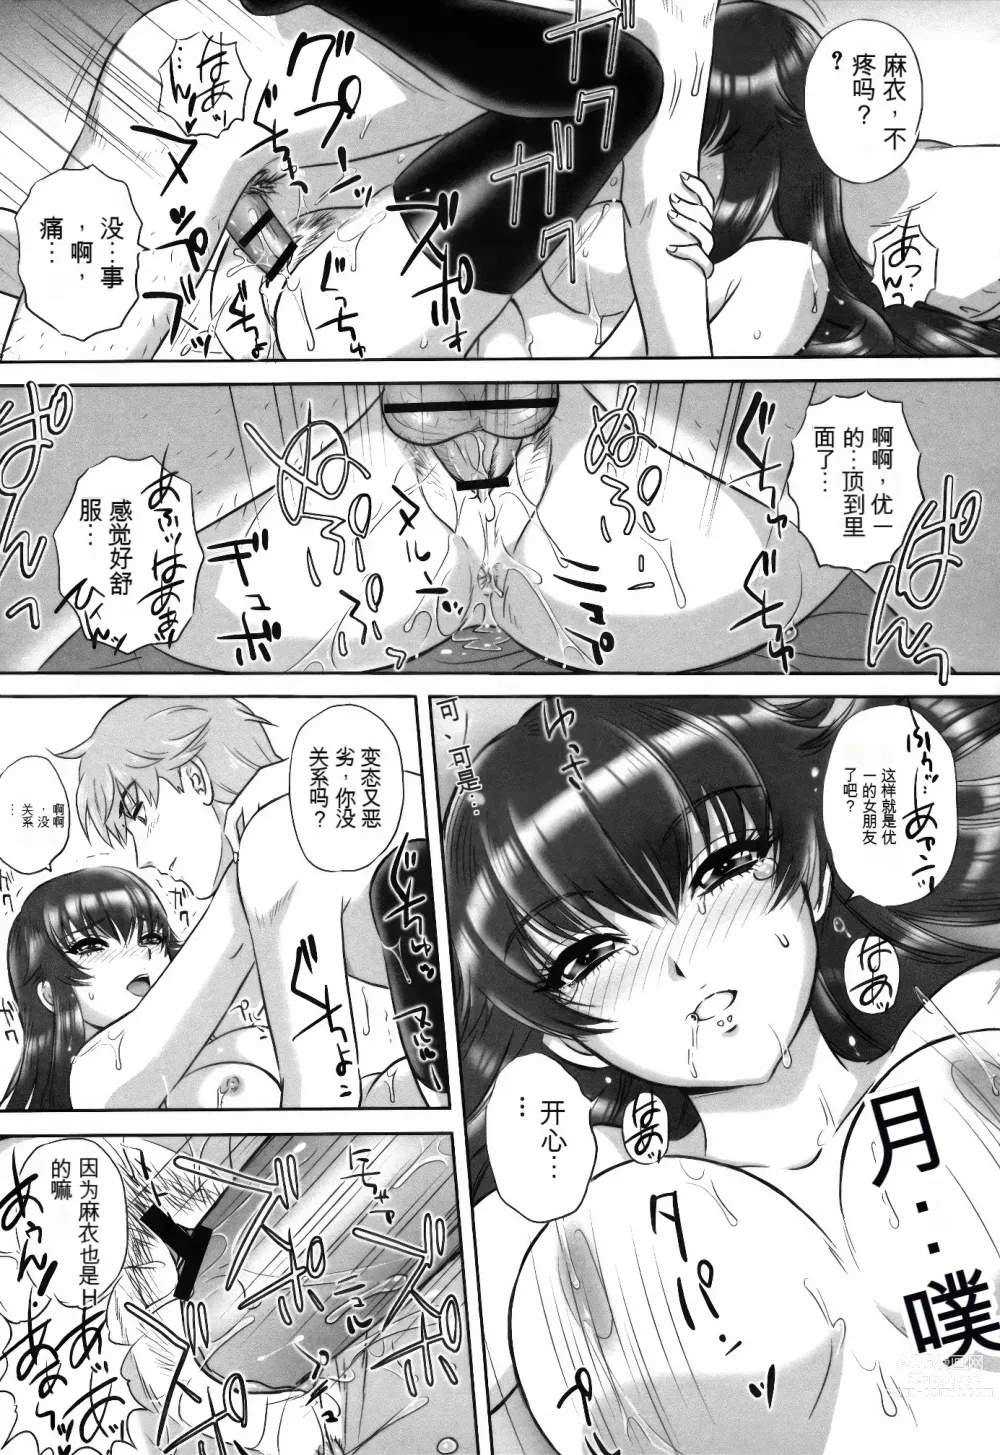 Page 32 of manga Ori no Naka no Ingi